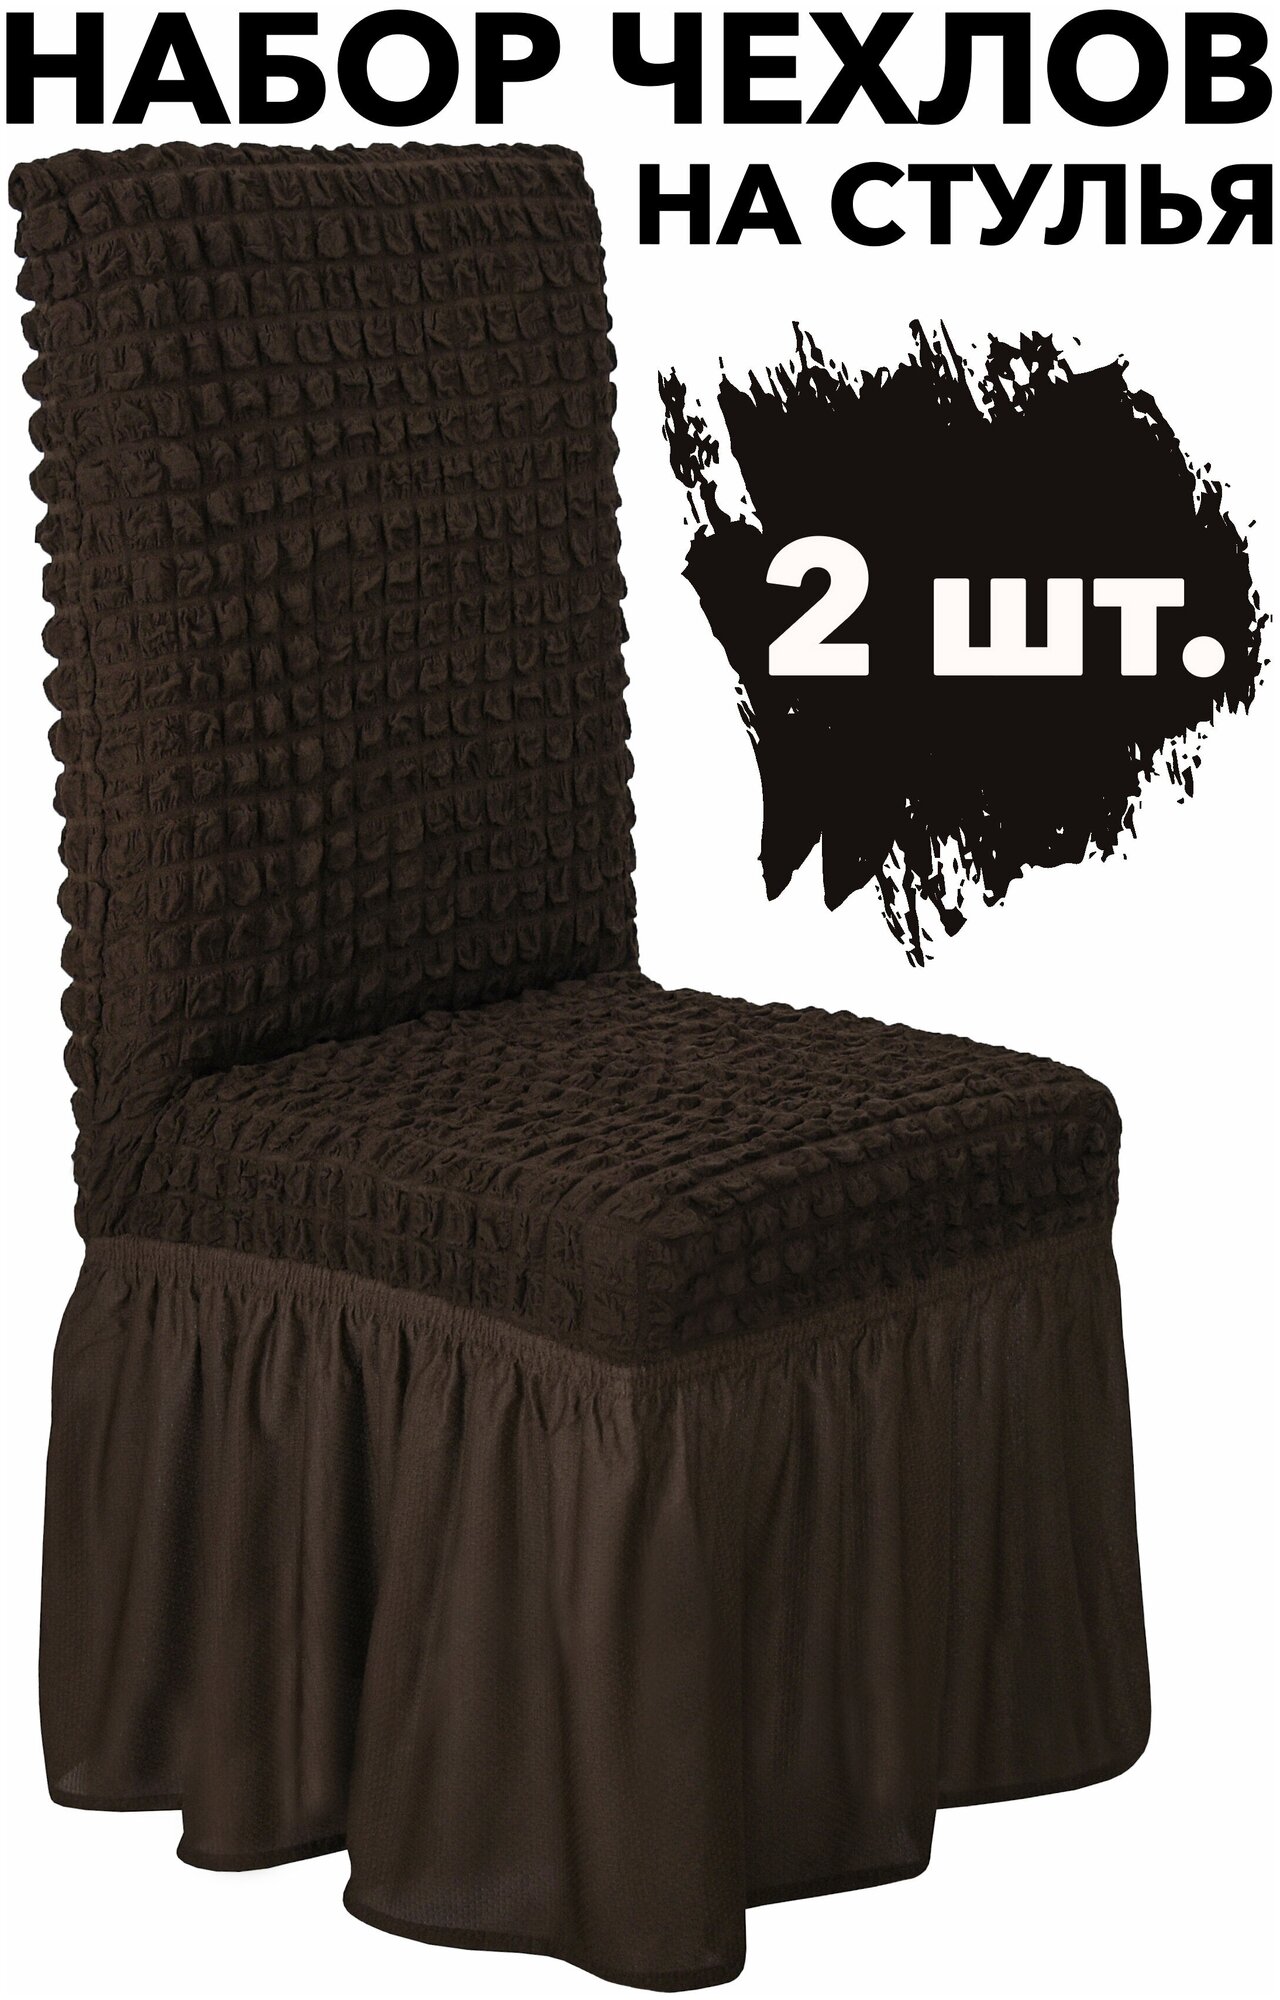 Чехлы для стульев со спинкой 2 шт набор универсальный на кухню однотонный на резинке, цвет Темно-коричневый